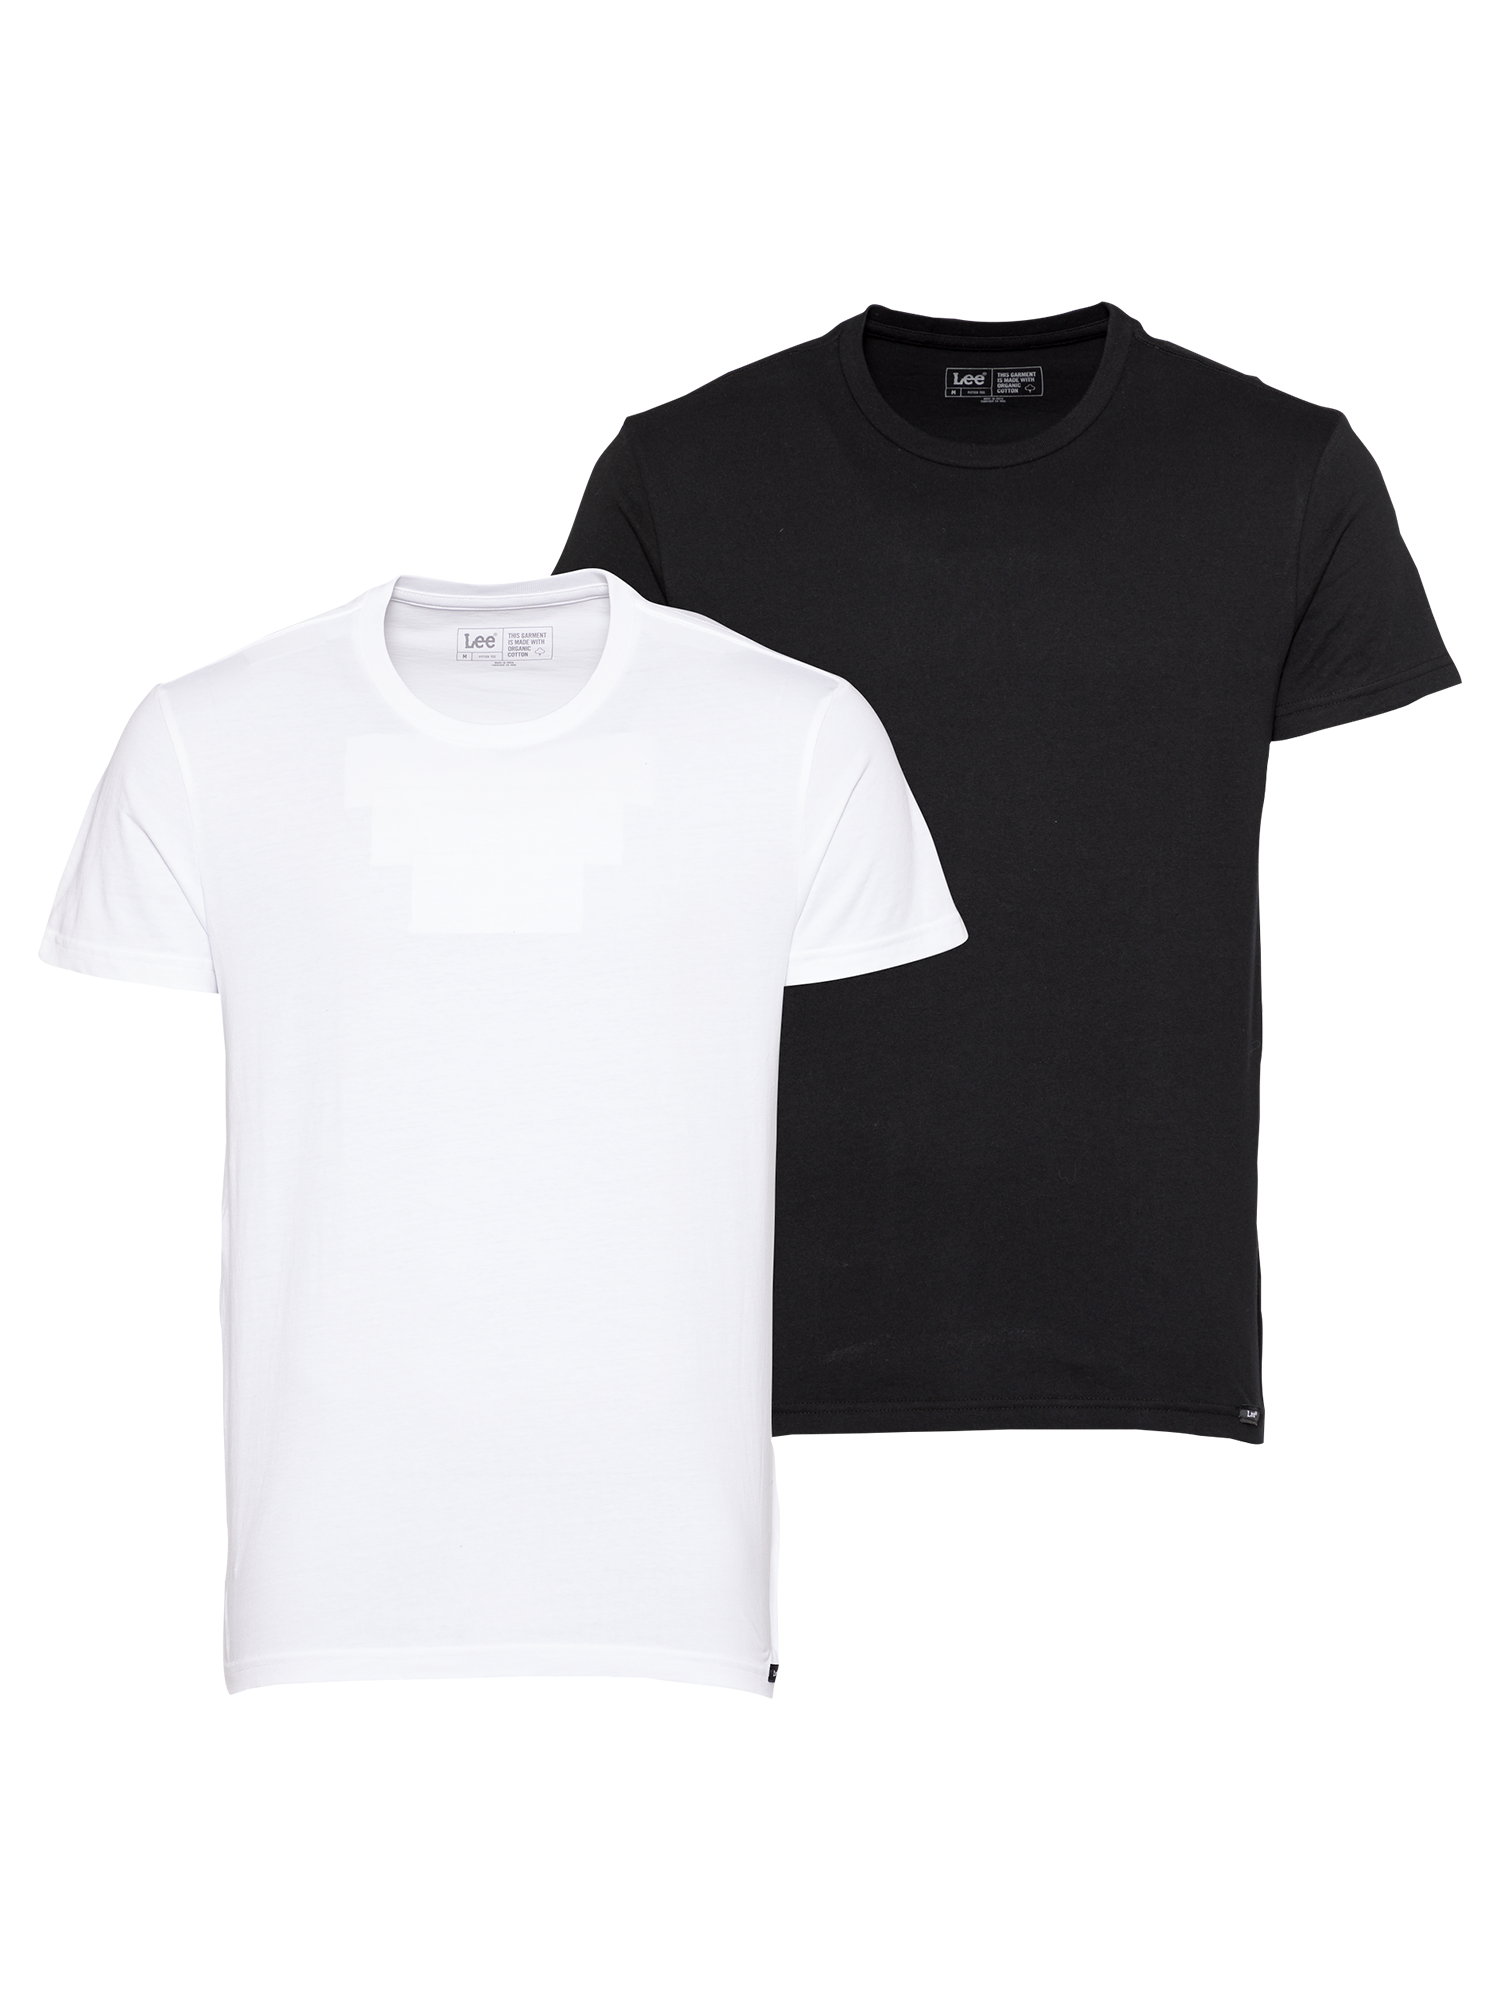 Odzież jlzxt Lee Koszulka w kolorze Czarny, Białym 